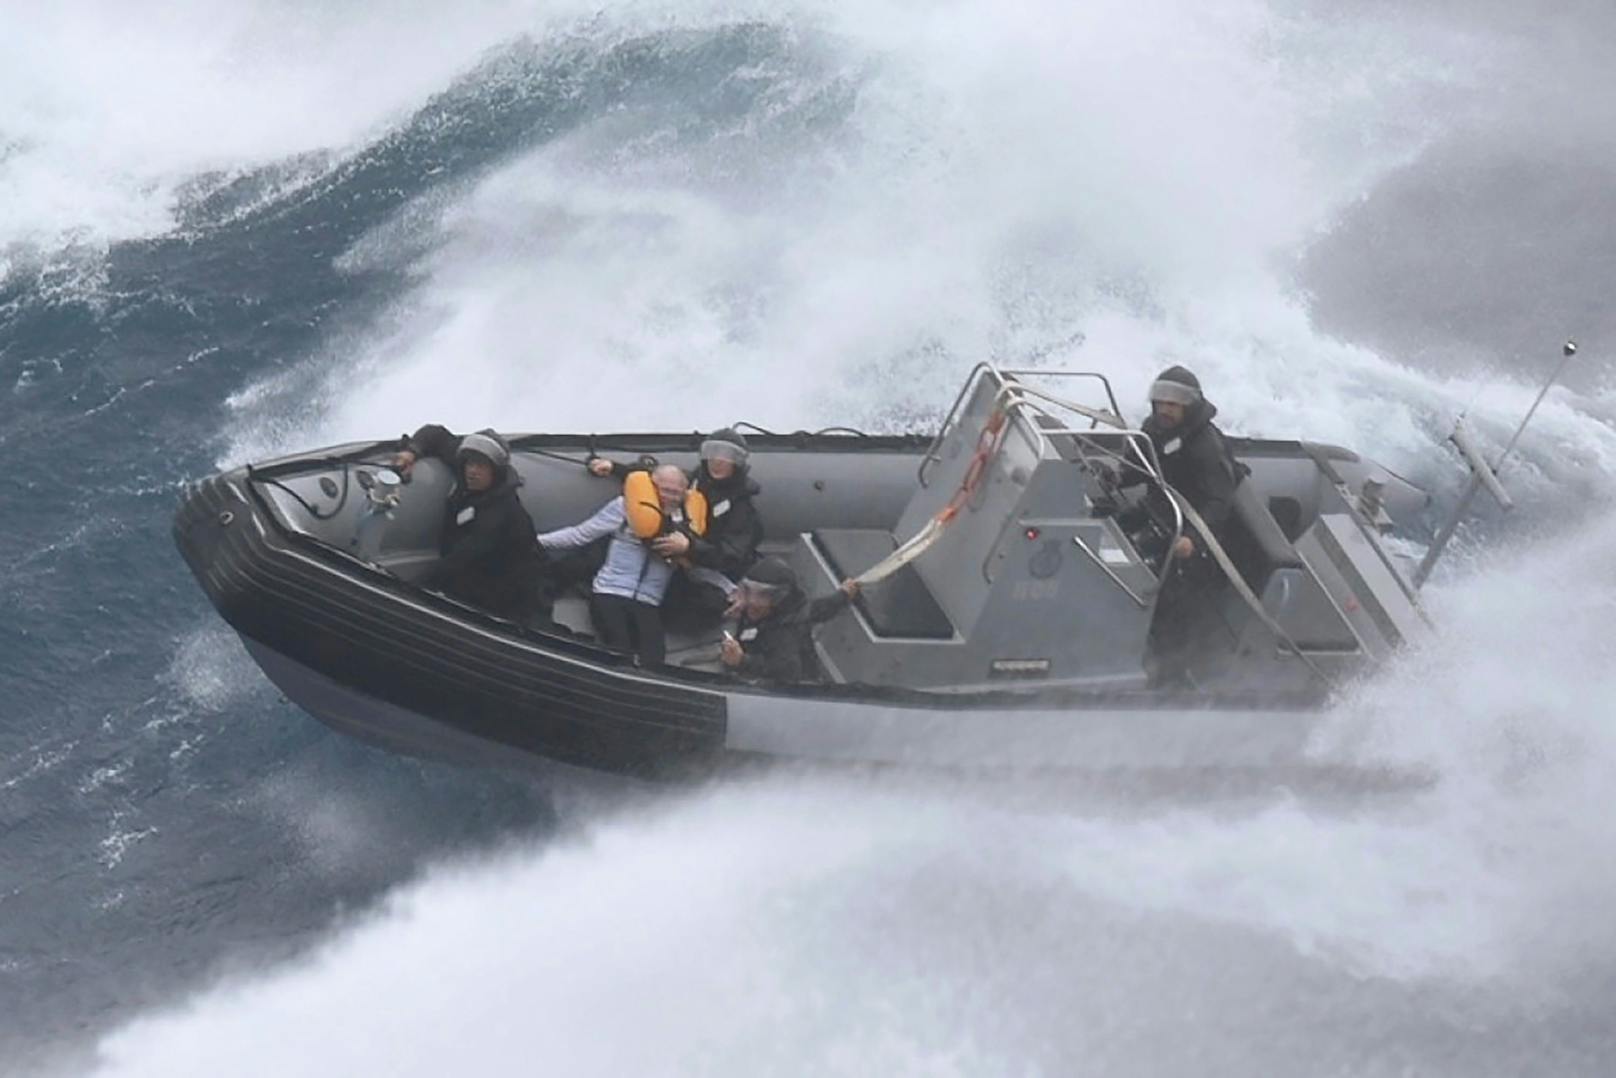 Ein Segler musste von Einsatzkräften gerettet werden, nachdem seine Yacht im Hauraki-Golf vor der neuseeländischen Nordinsel gekentert war.